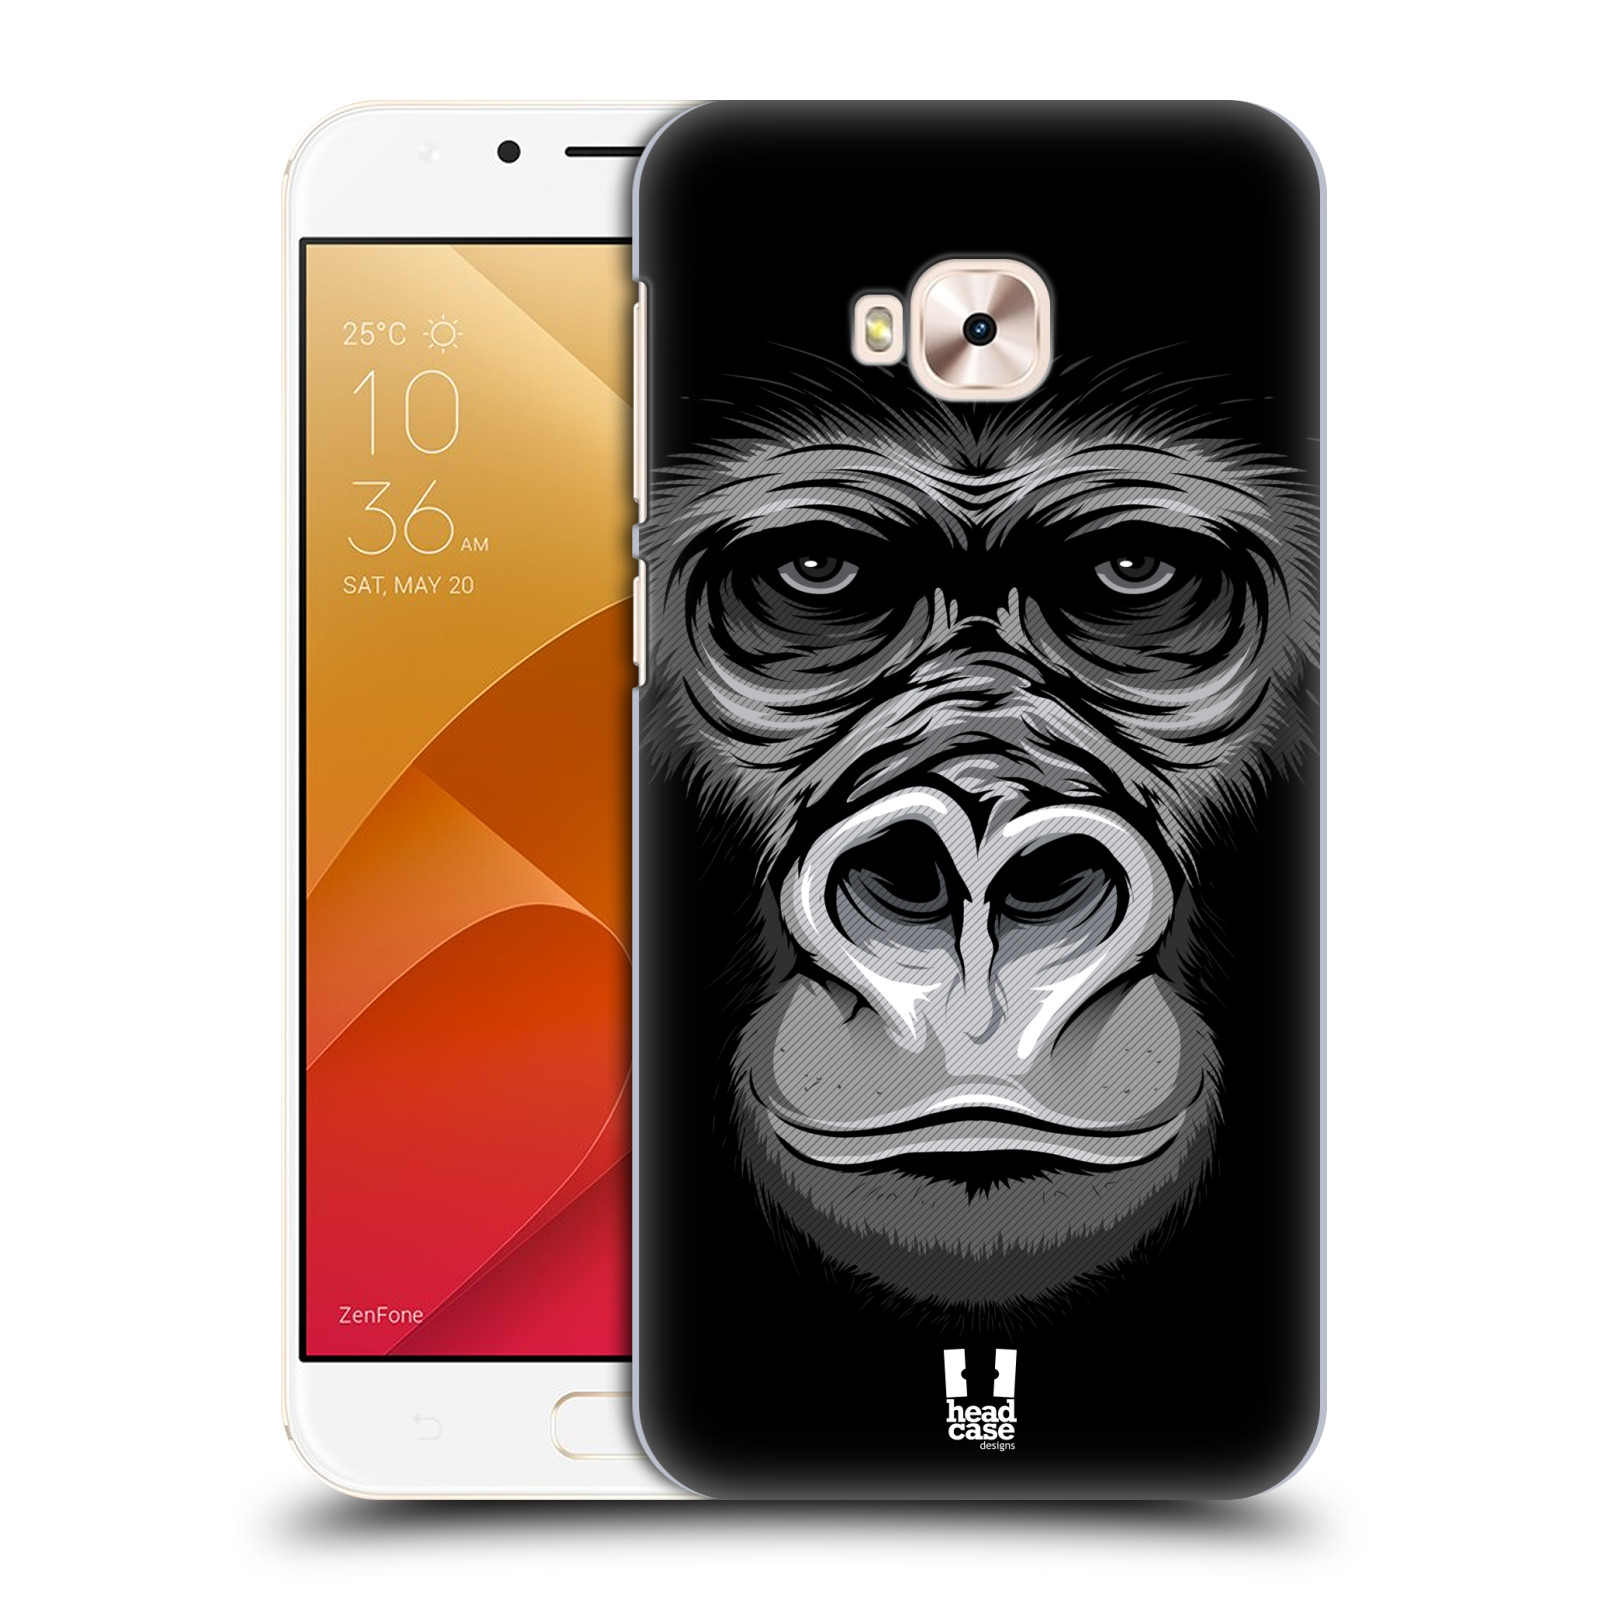 HEAD CASE plastový obal na mobil Asus Zenfone 4 Selfie Pro ZD552KL vzor Zvíře kreslená tvář 2 gorila